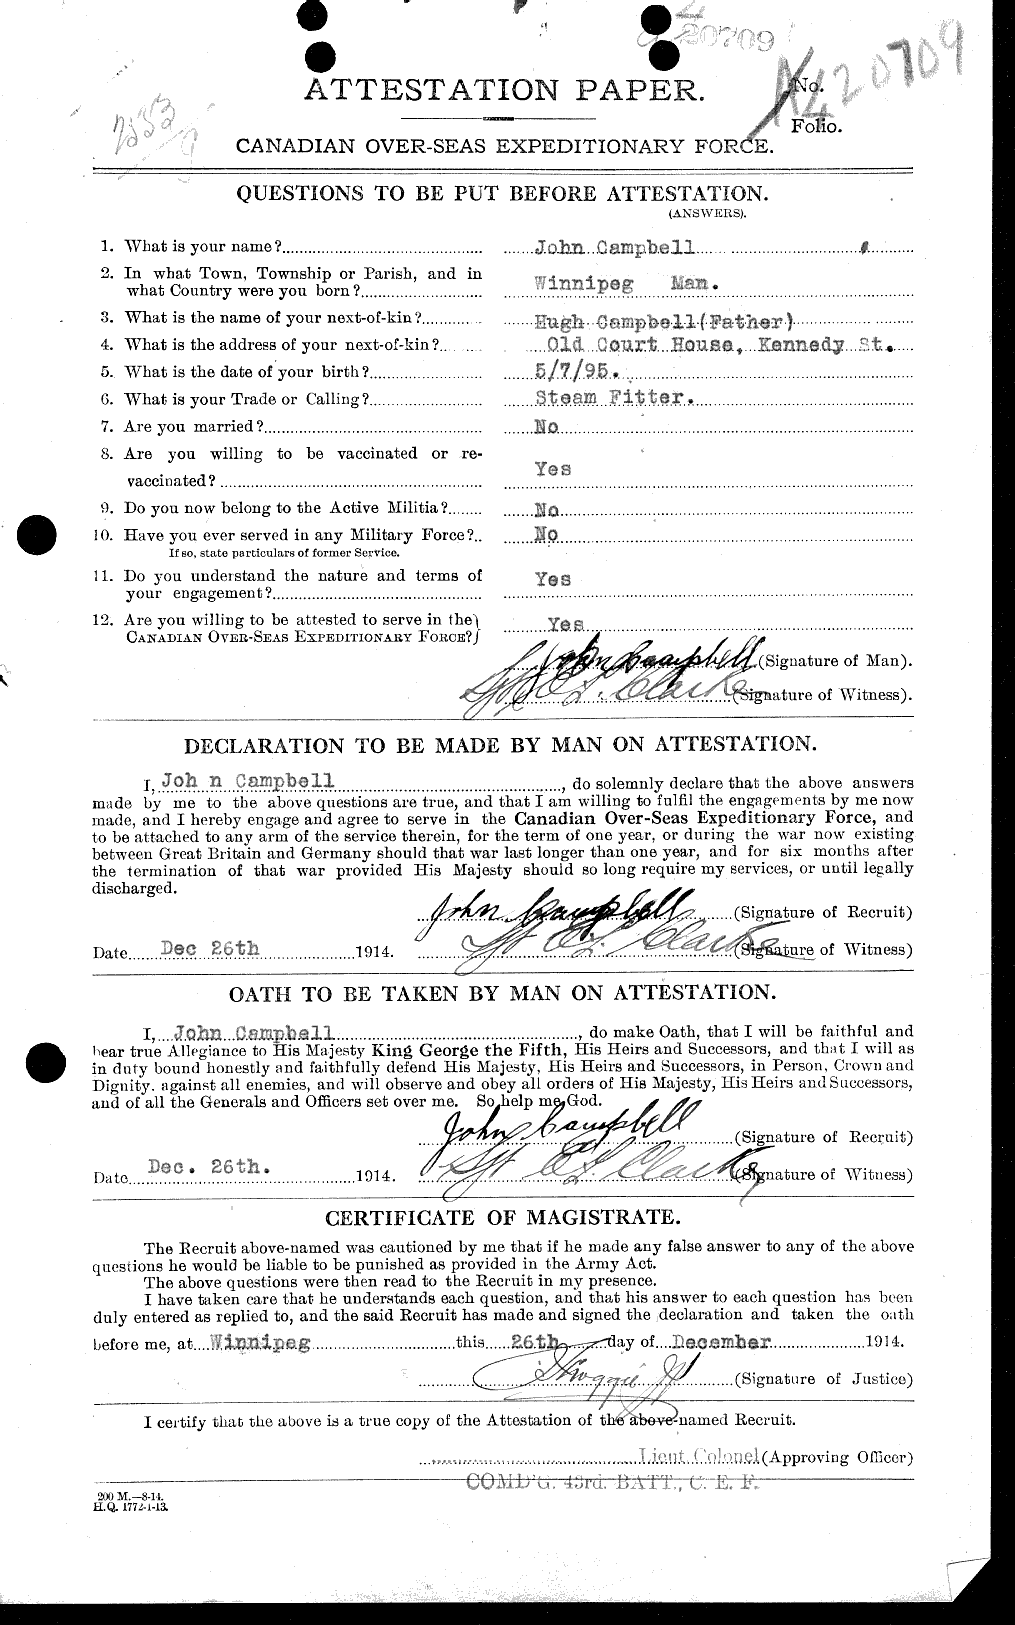 Dossiers du Personnel de la Première Guerre mondiale - CEC 006828a